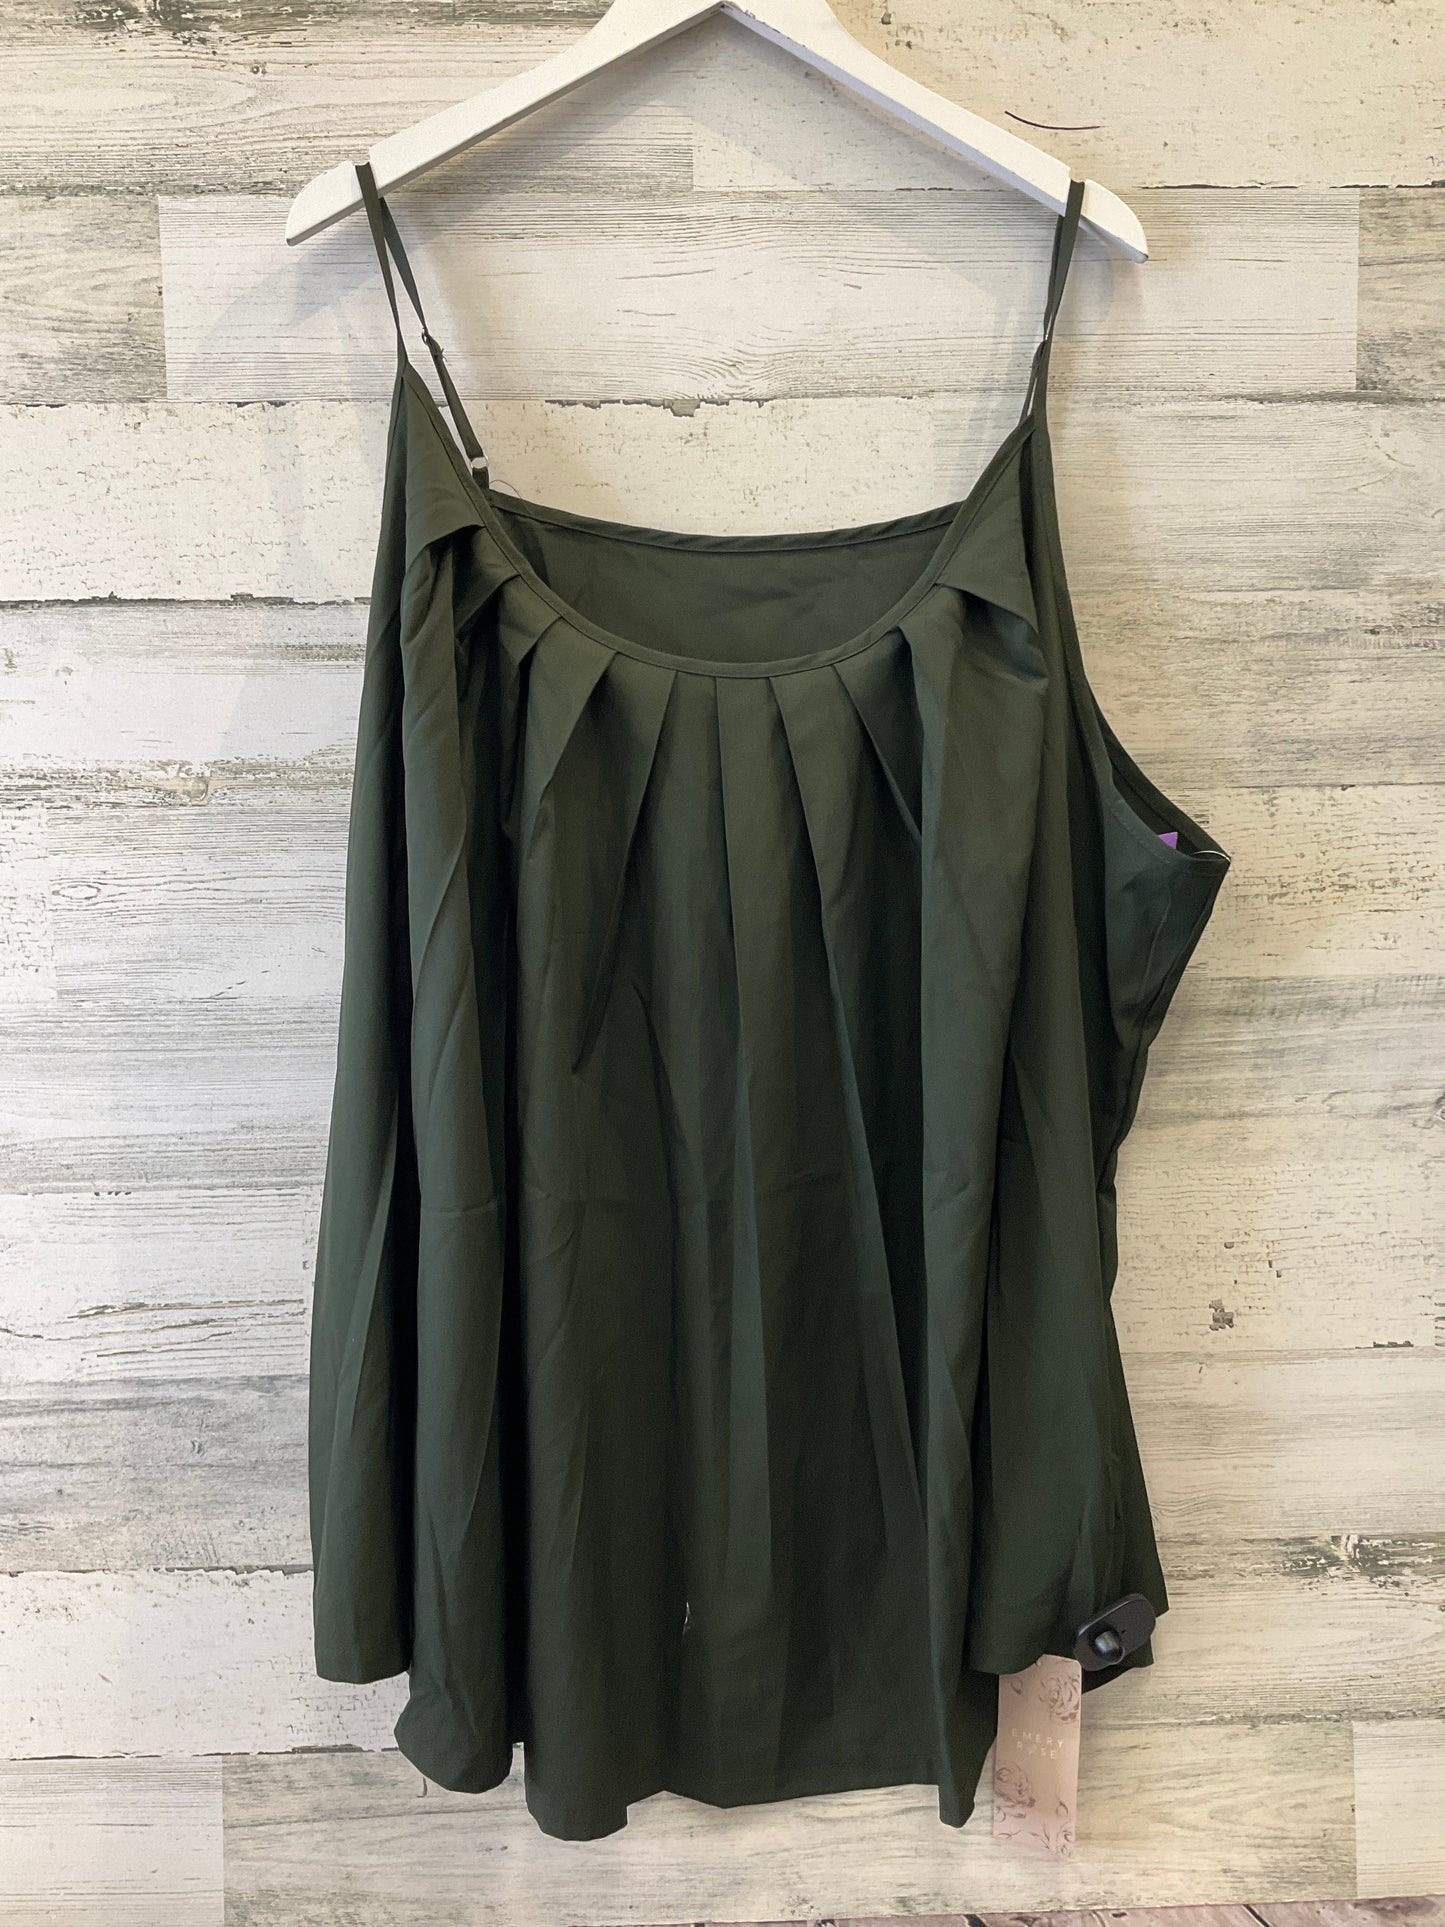 Green Top Sleeveless Clothes Mentor, Size 4x